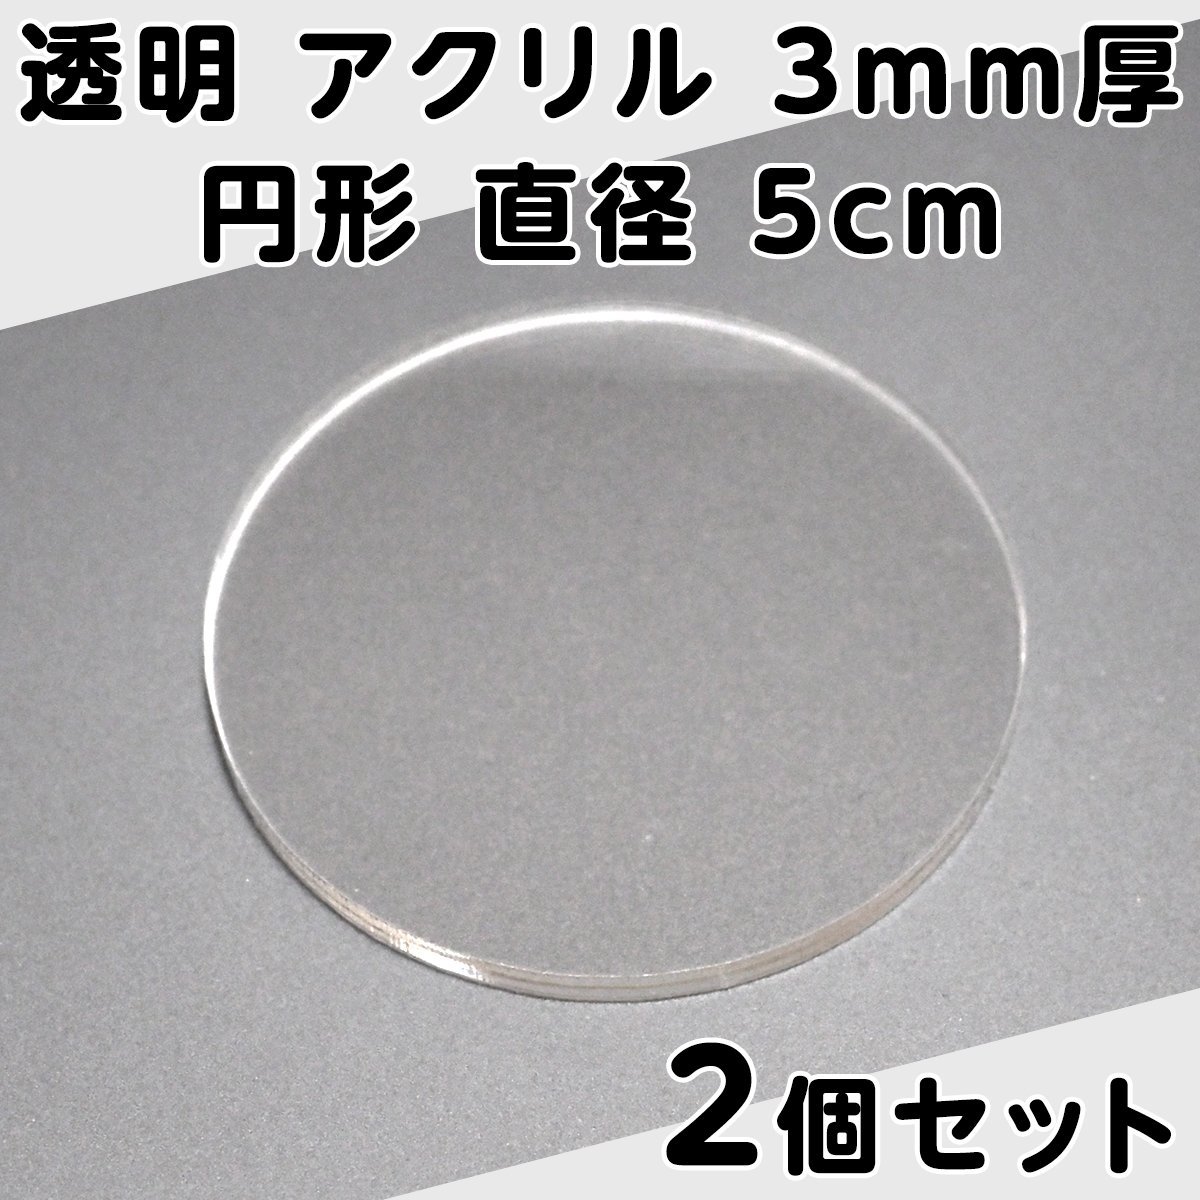 透明 アクリル 3mm厚 円形 直径 5cm 2個セット_画像1